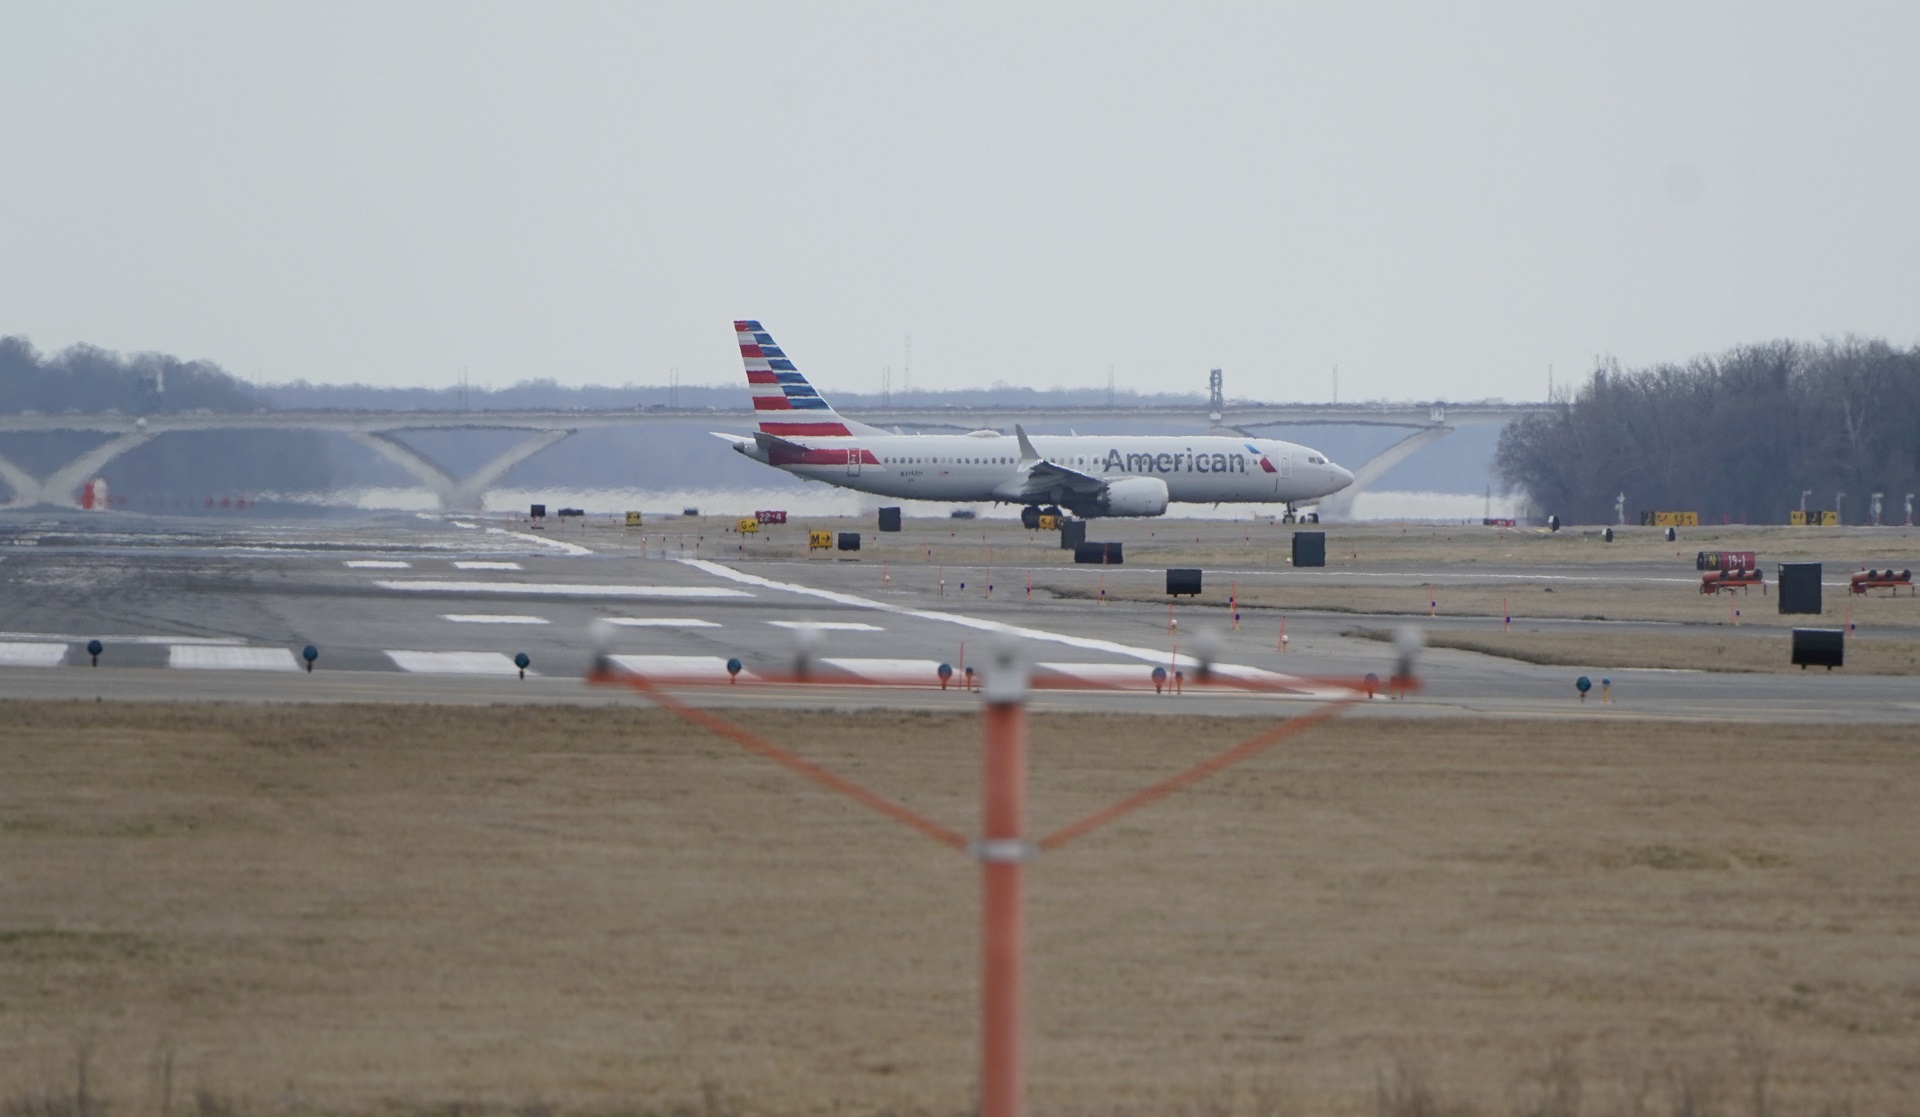 طائرة من طراز بوينغ ماكس 8 - 737 تابعة للخطوط الجوية الأميركية بعد هبوطها في مطار ريجان في الولايات المتحدة. 13 مارس 2019. جوشوا روبرتس / رويترز